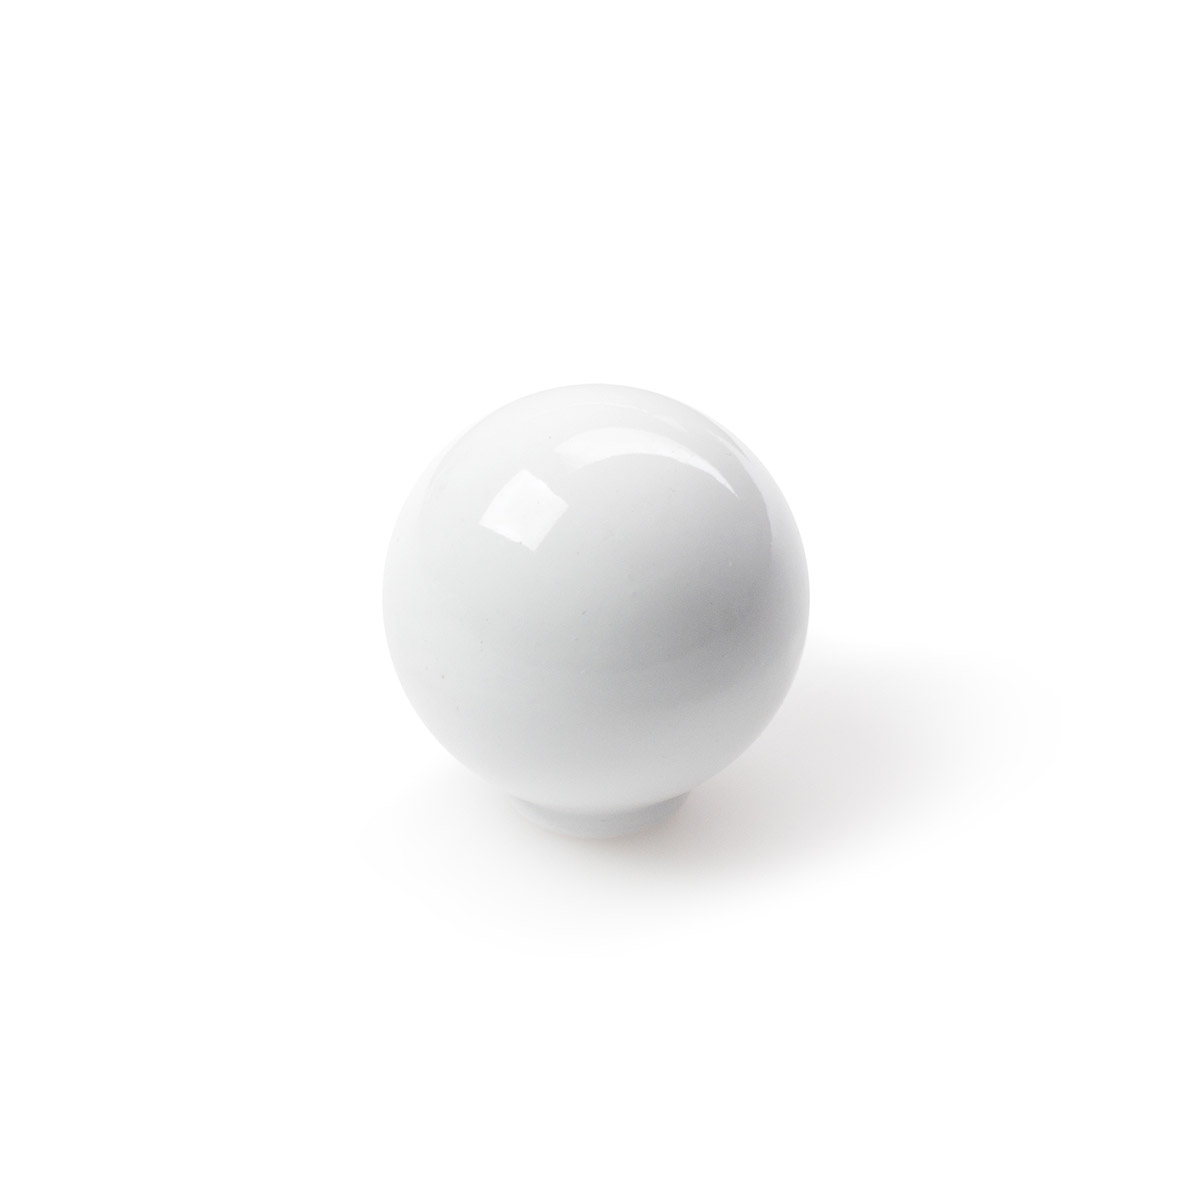 Sac avec 6 boutons en plastique avec finition blanche, dimensions: 28x28x29mm Ø: 28mm